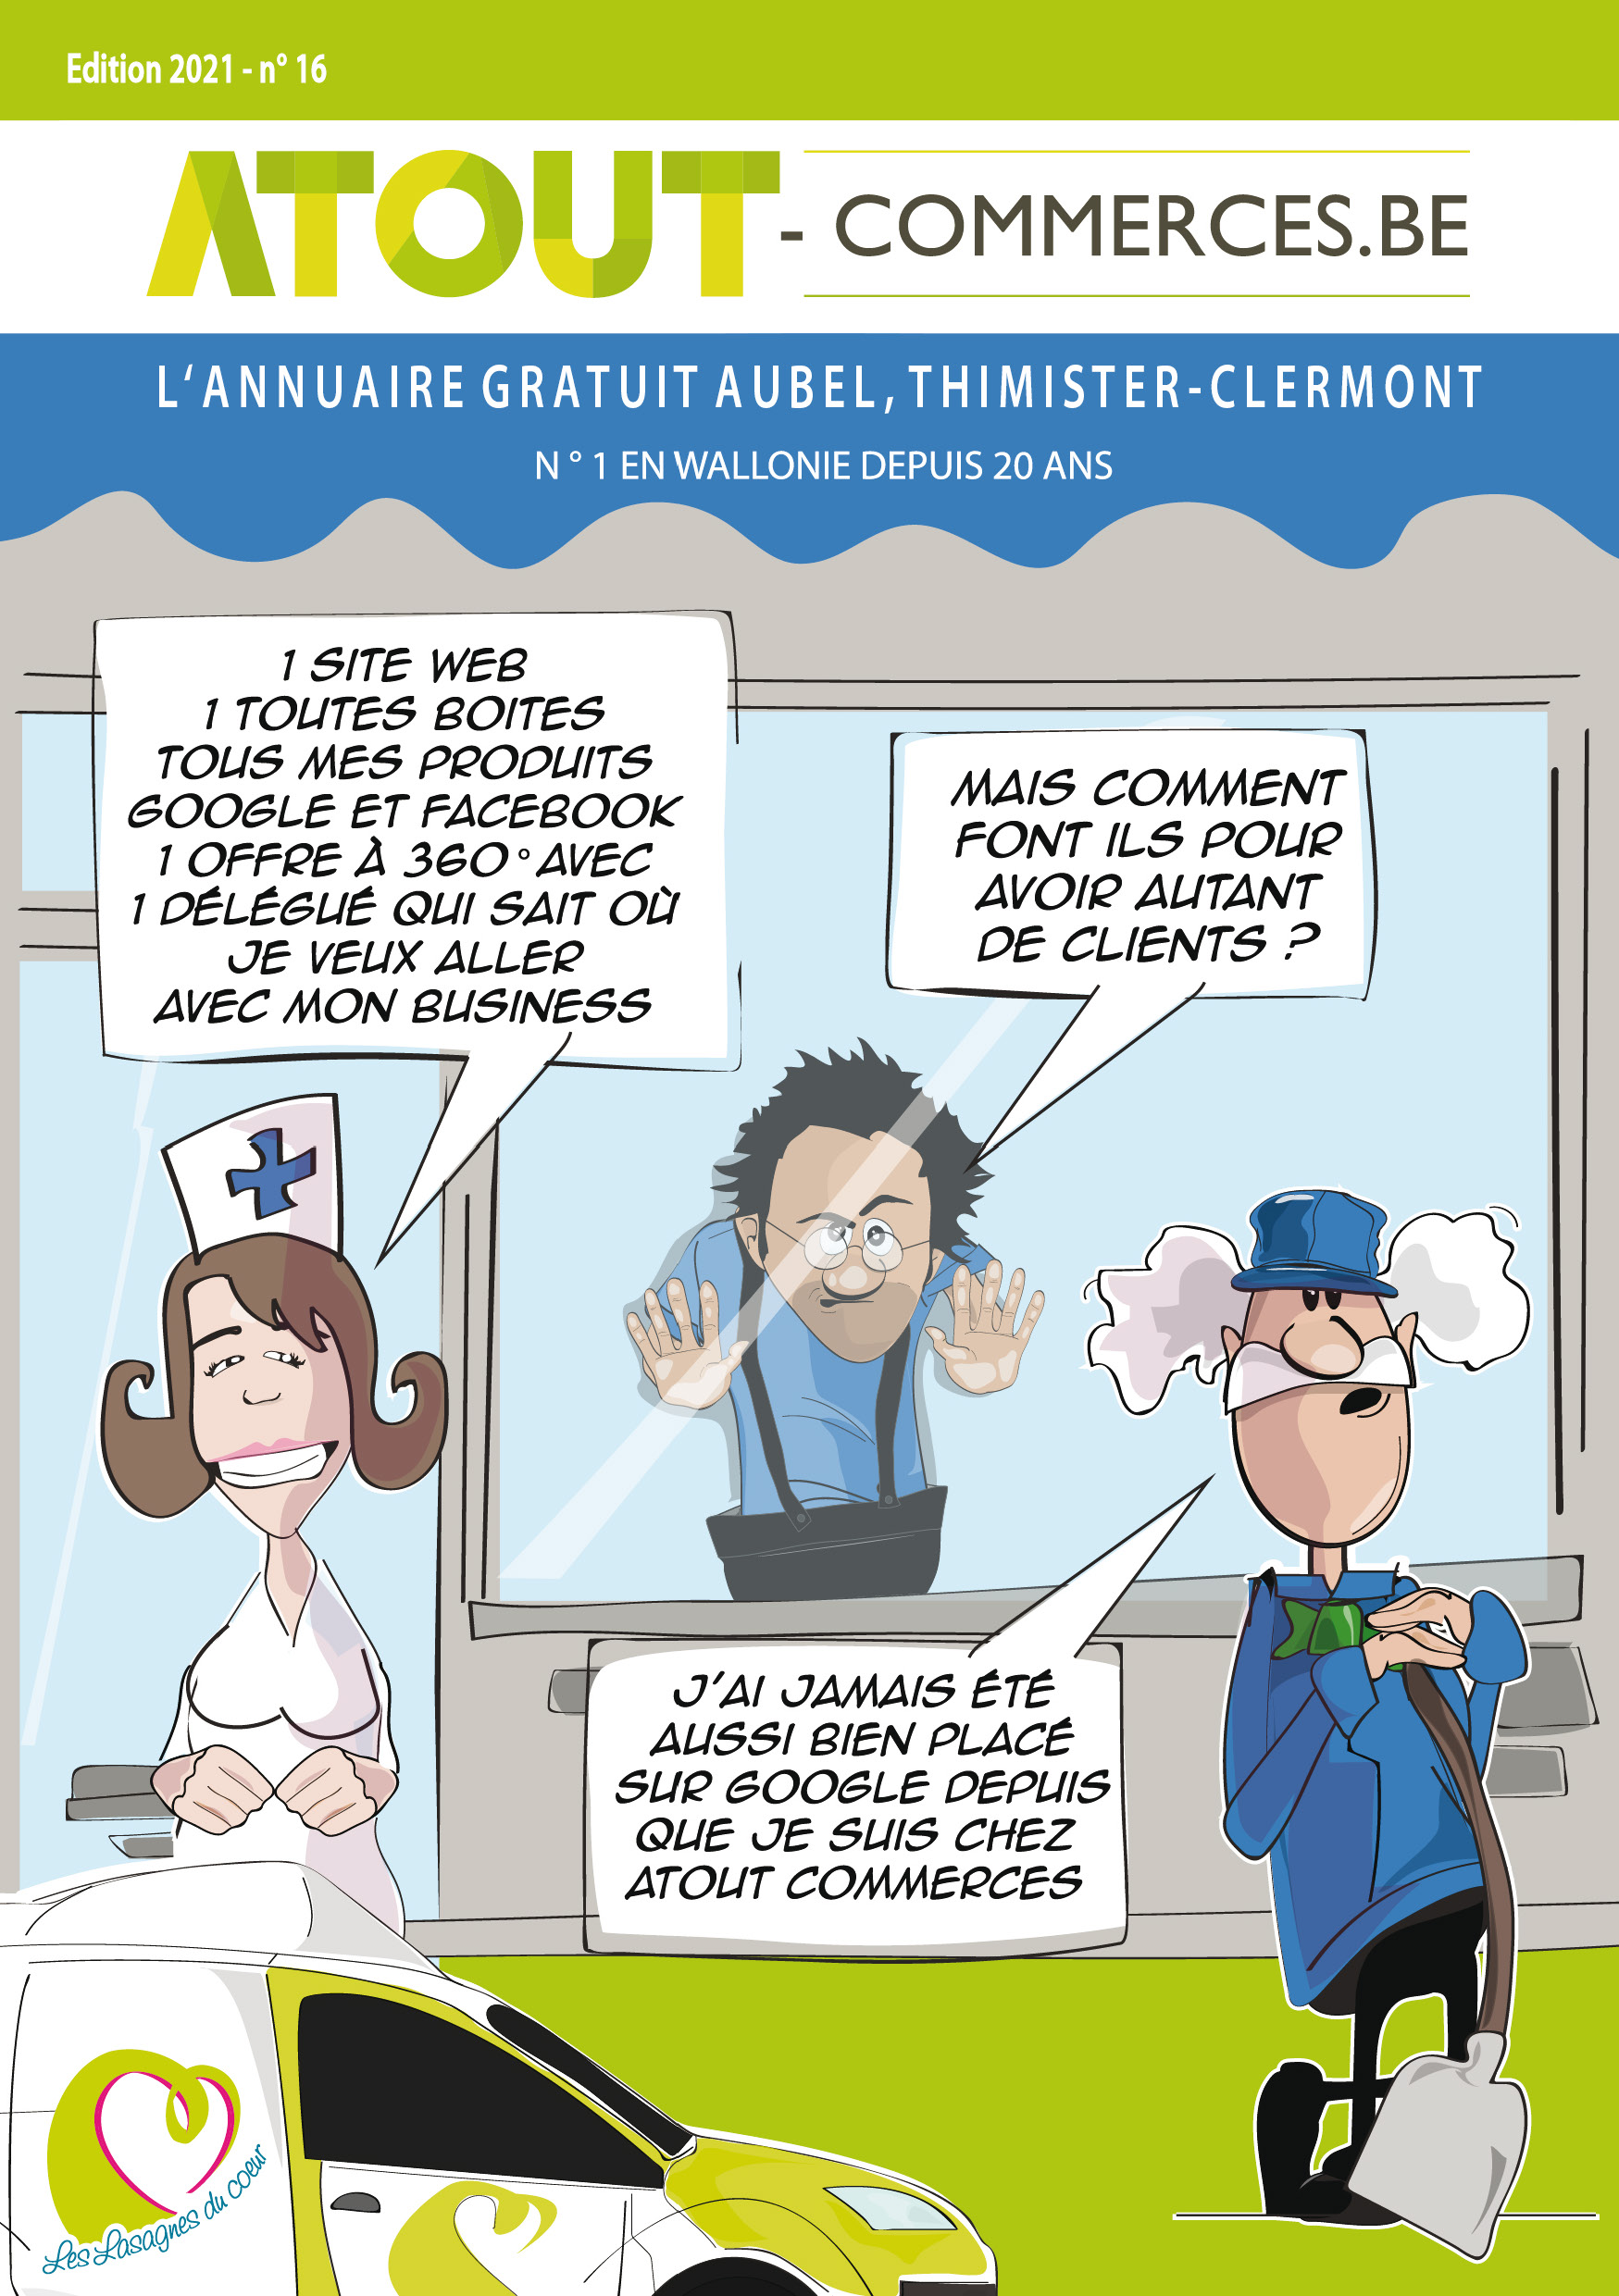 Aubel, Thimister-Clermont & entités